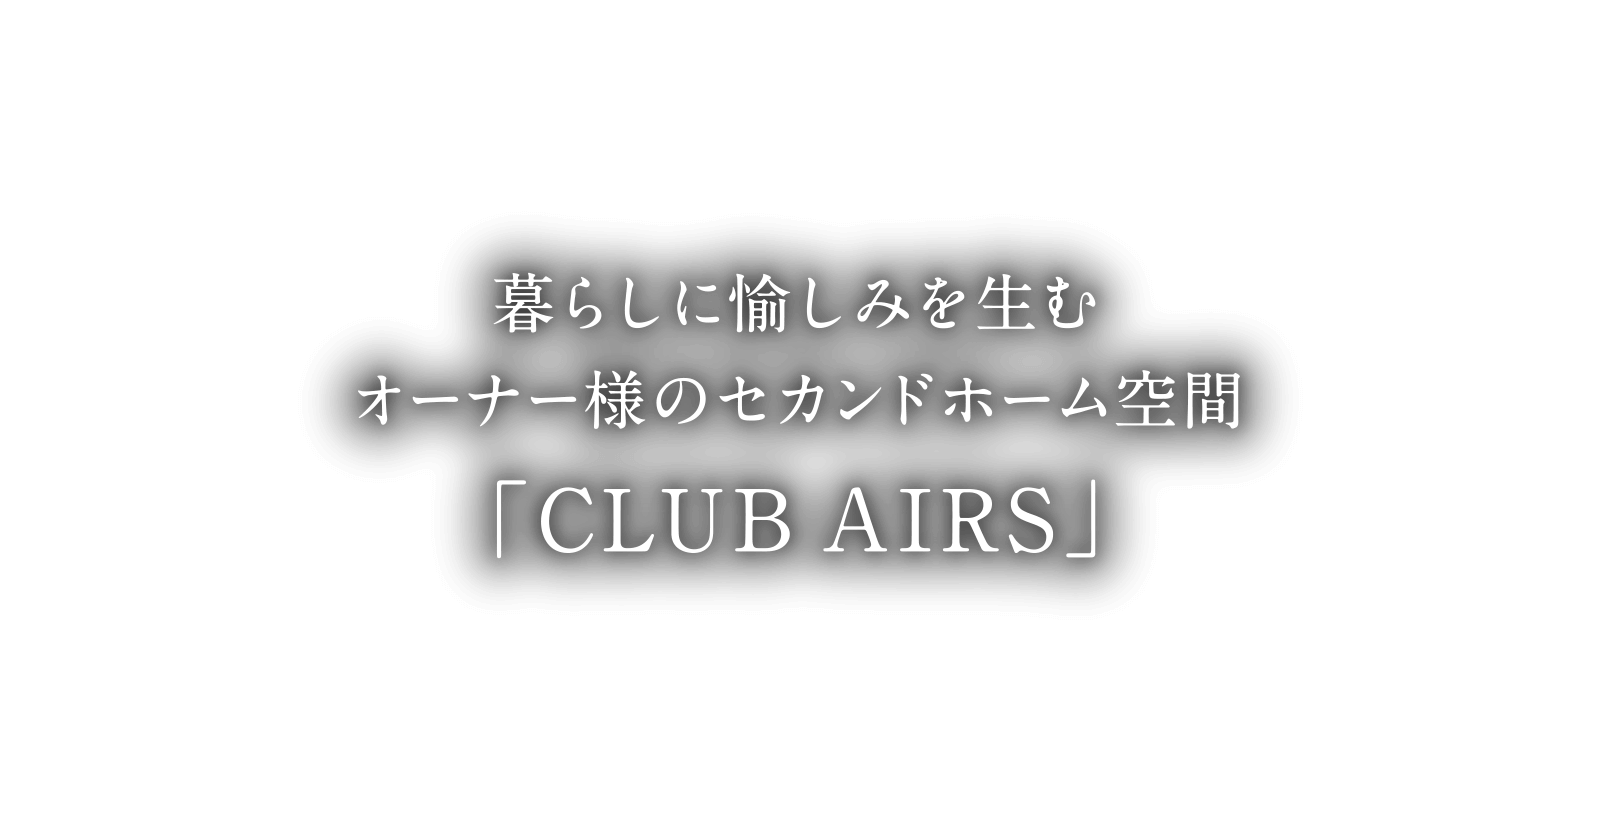 暮らしに愉しみを生むオーナー様のセカンドホーム空間「CLUB AIRS」